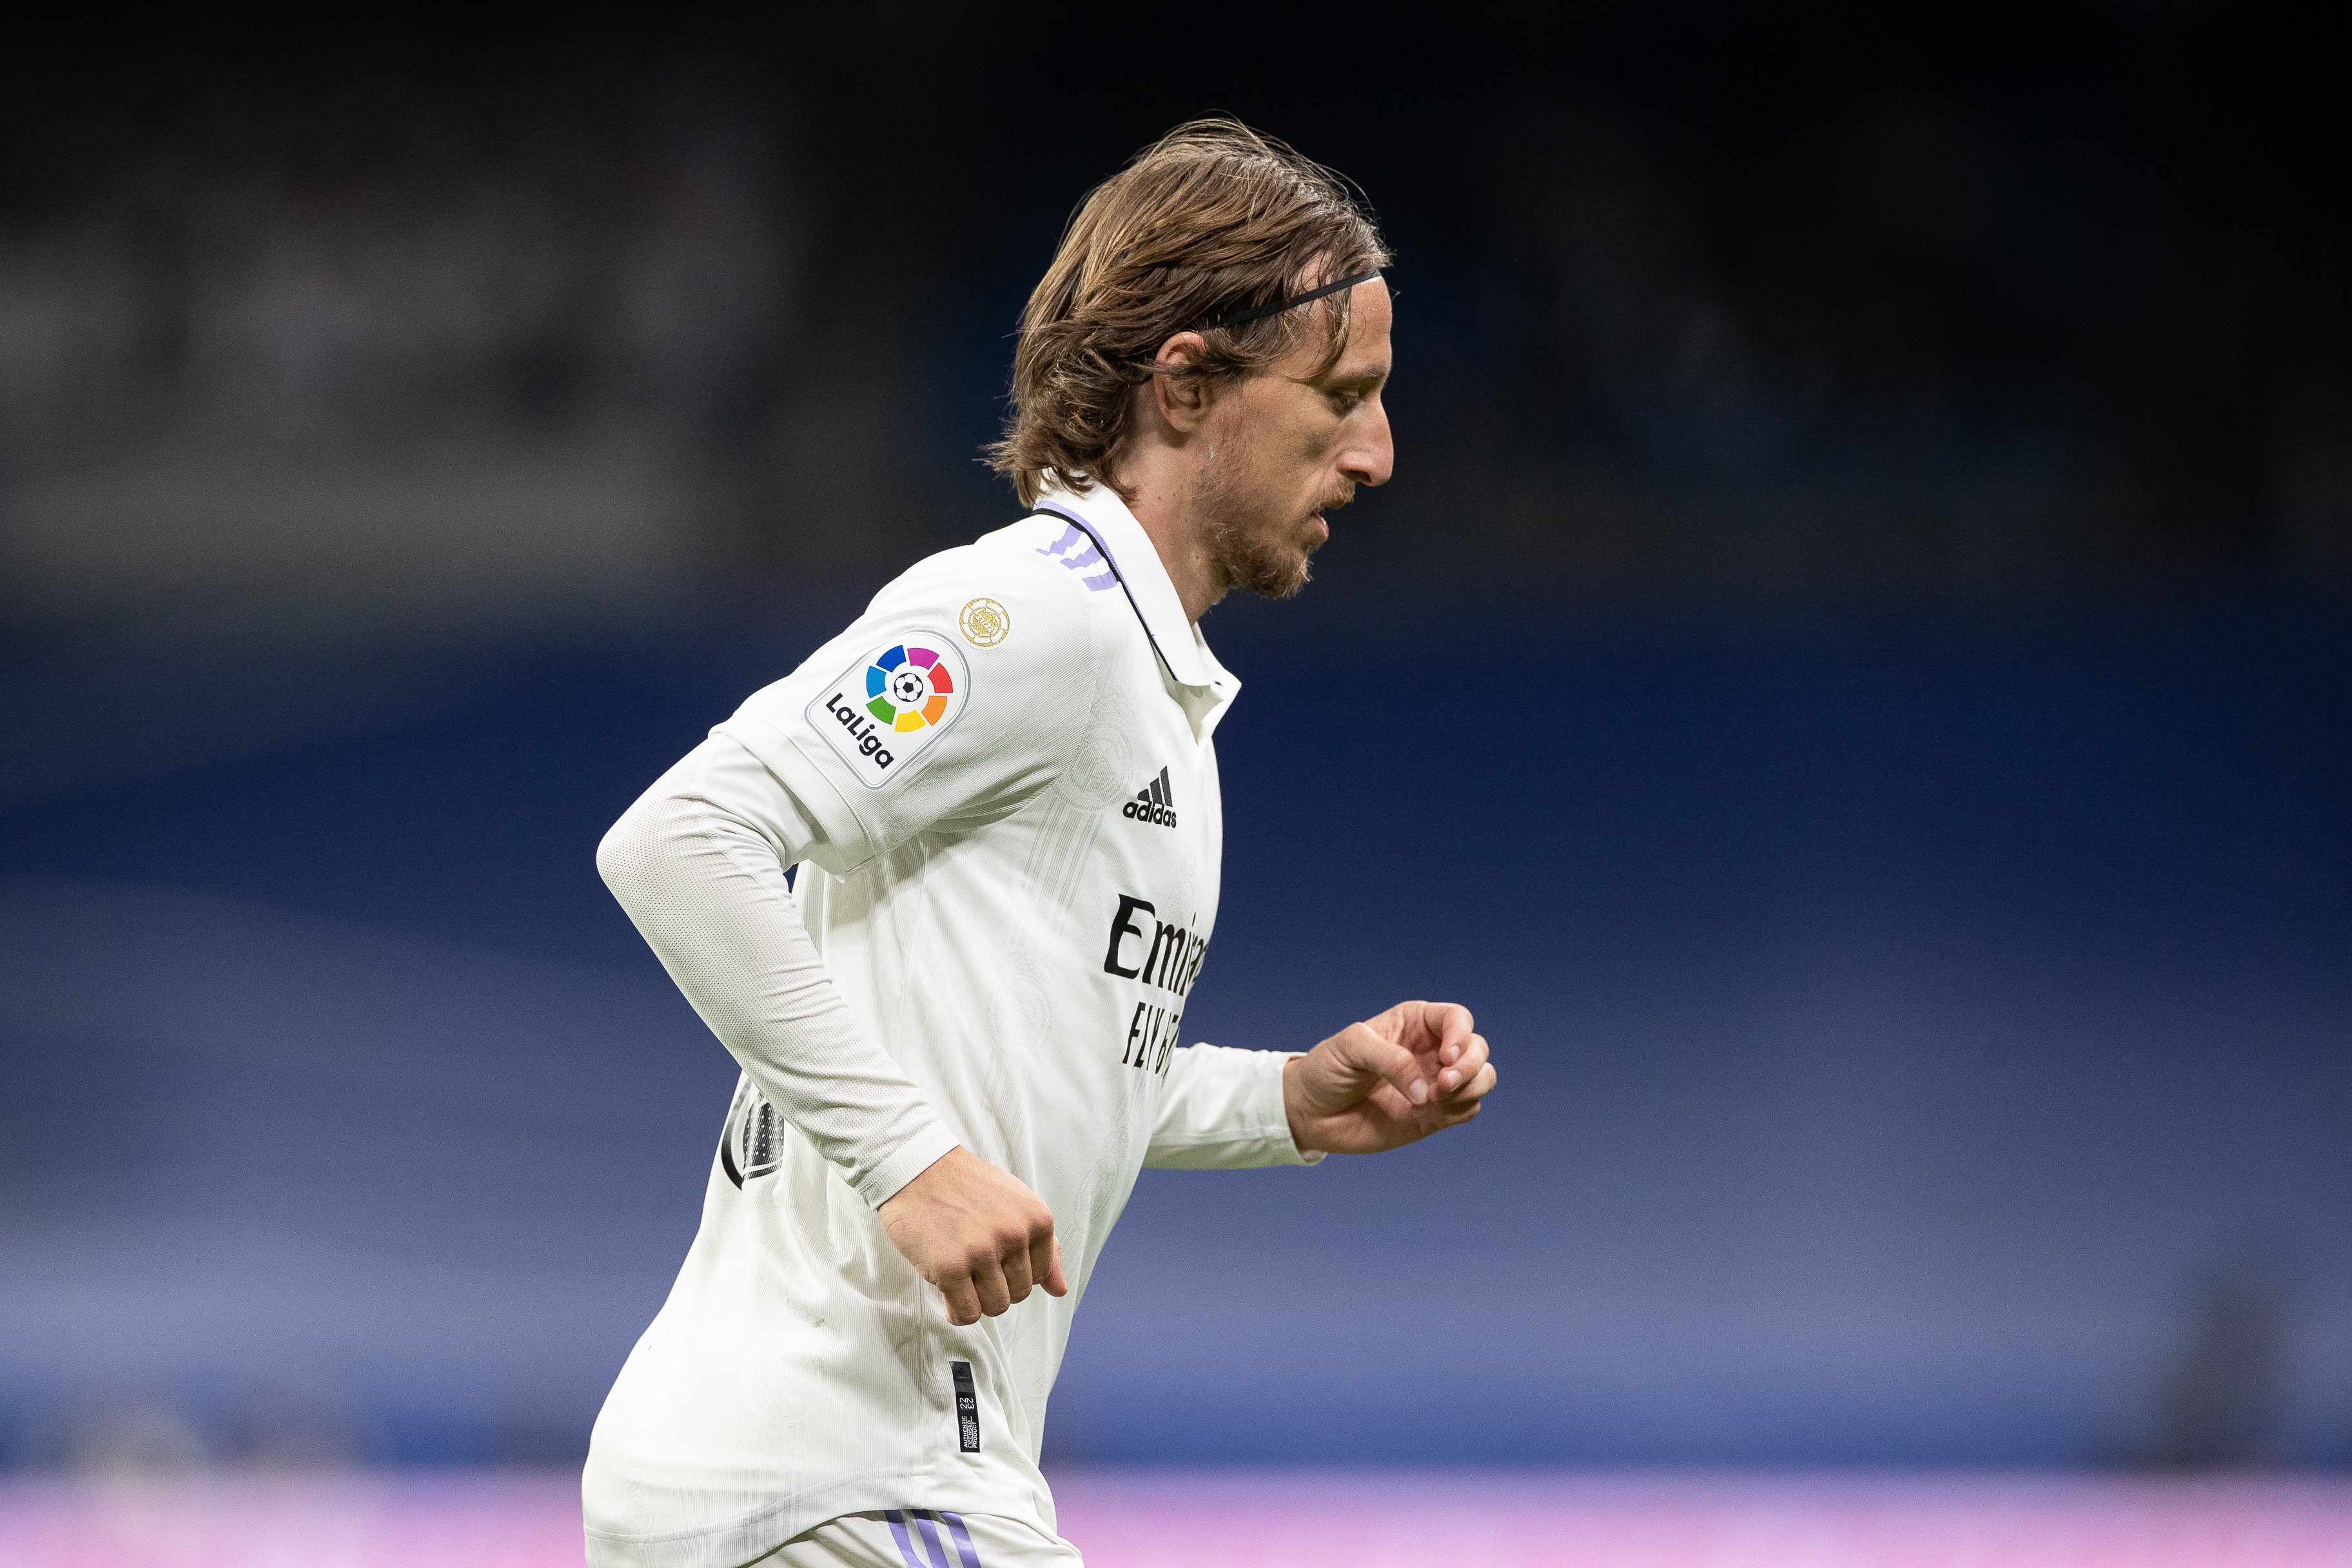 Hi ha cas Modric al Reial Madrid, 2 ofertes per sortir més la proposta de Florentino Pérez, no convenç